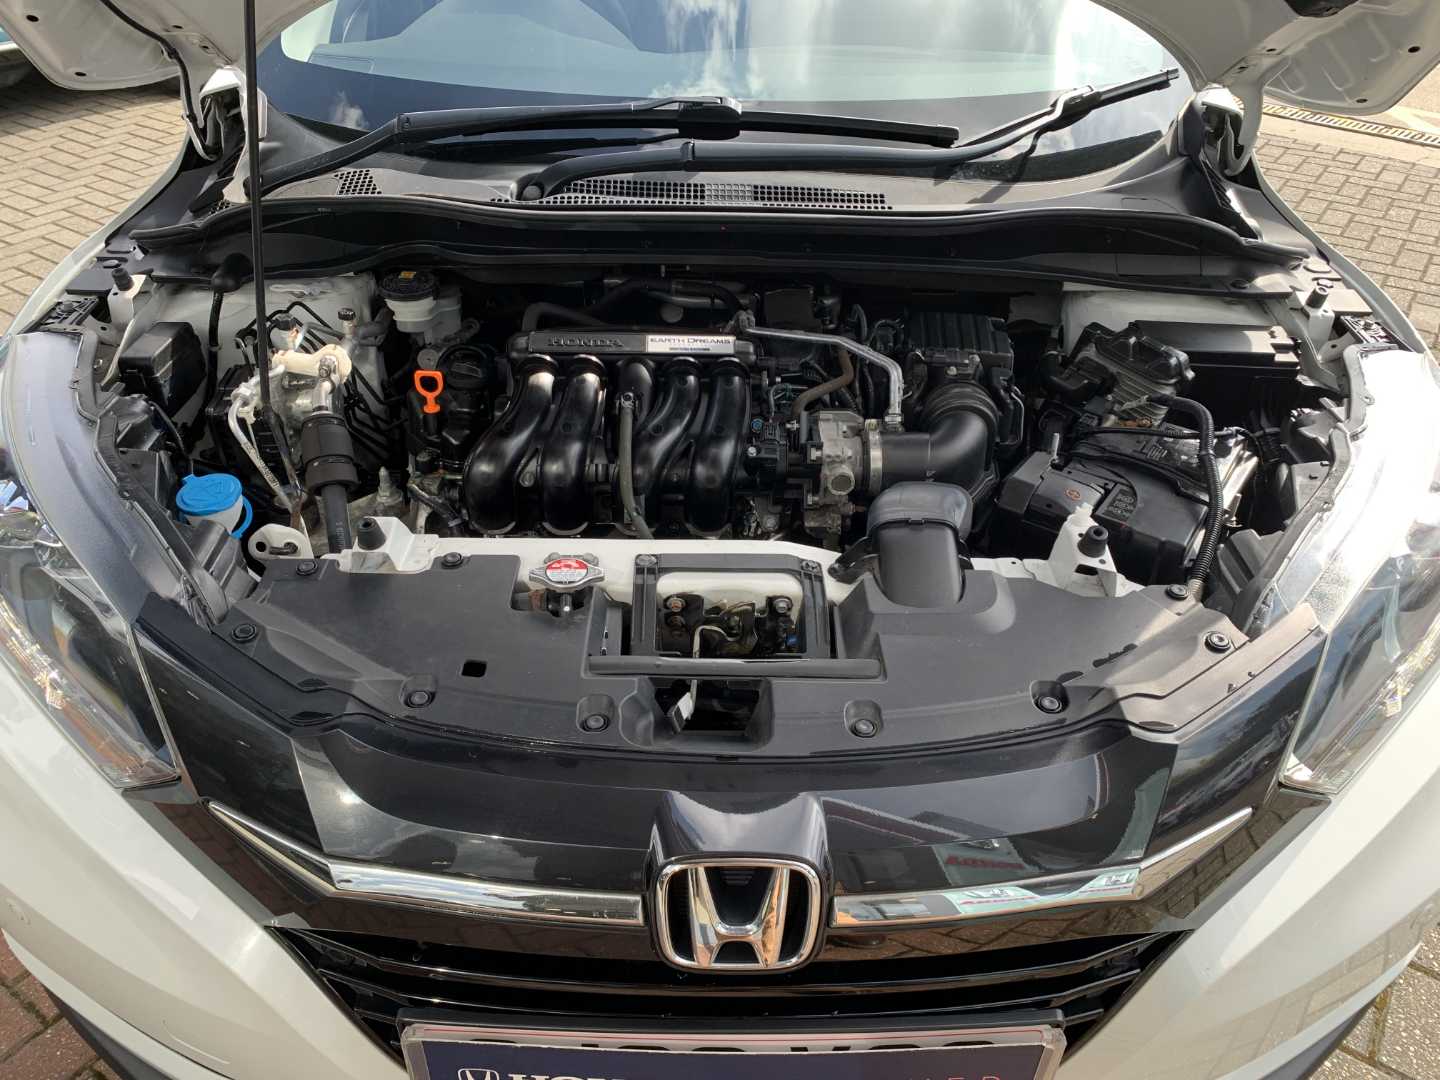 Honda HR-V 1.5 i-VTEC EX CVT 5dr - Image 20